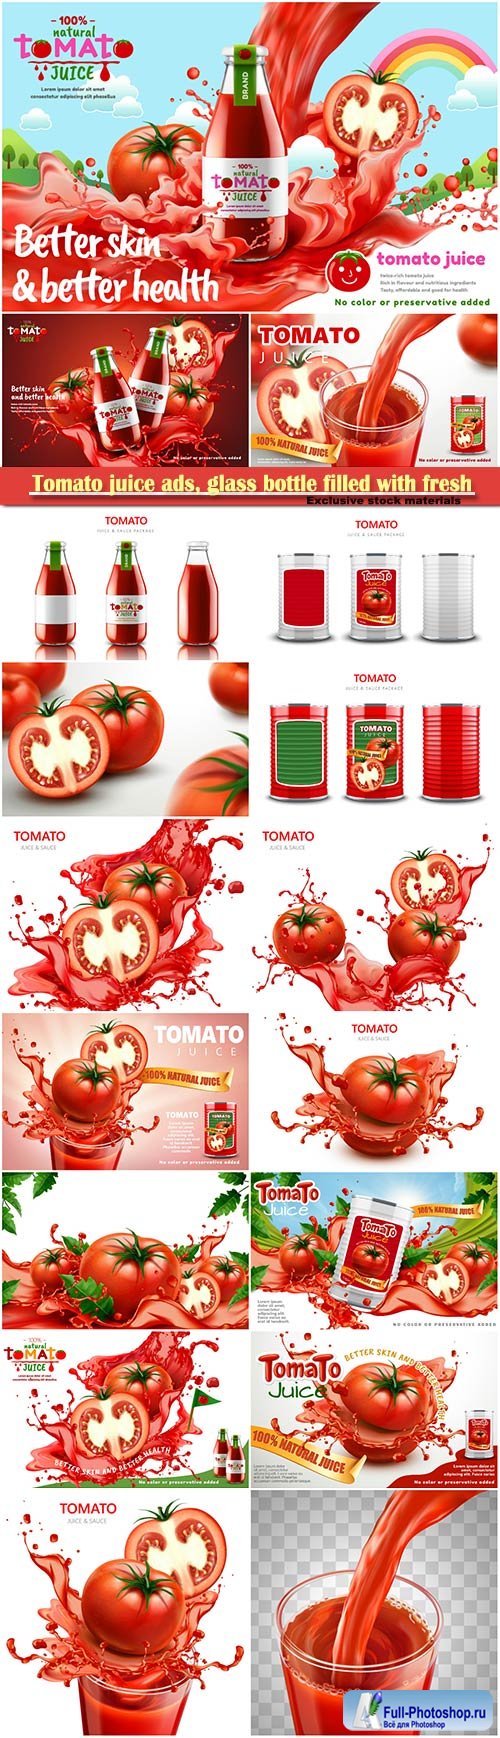 Tomato juice ads, glass bottle filled with fresh tomato juice with splashing juice, 3d illustration